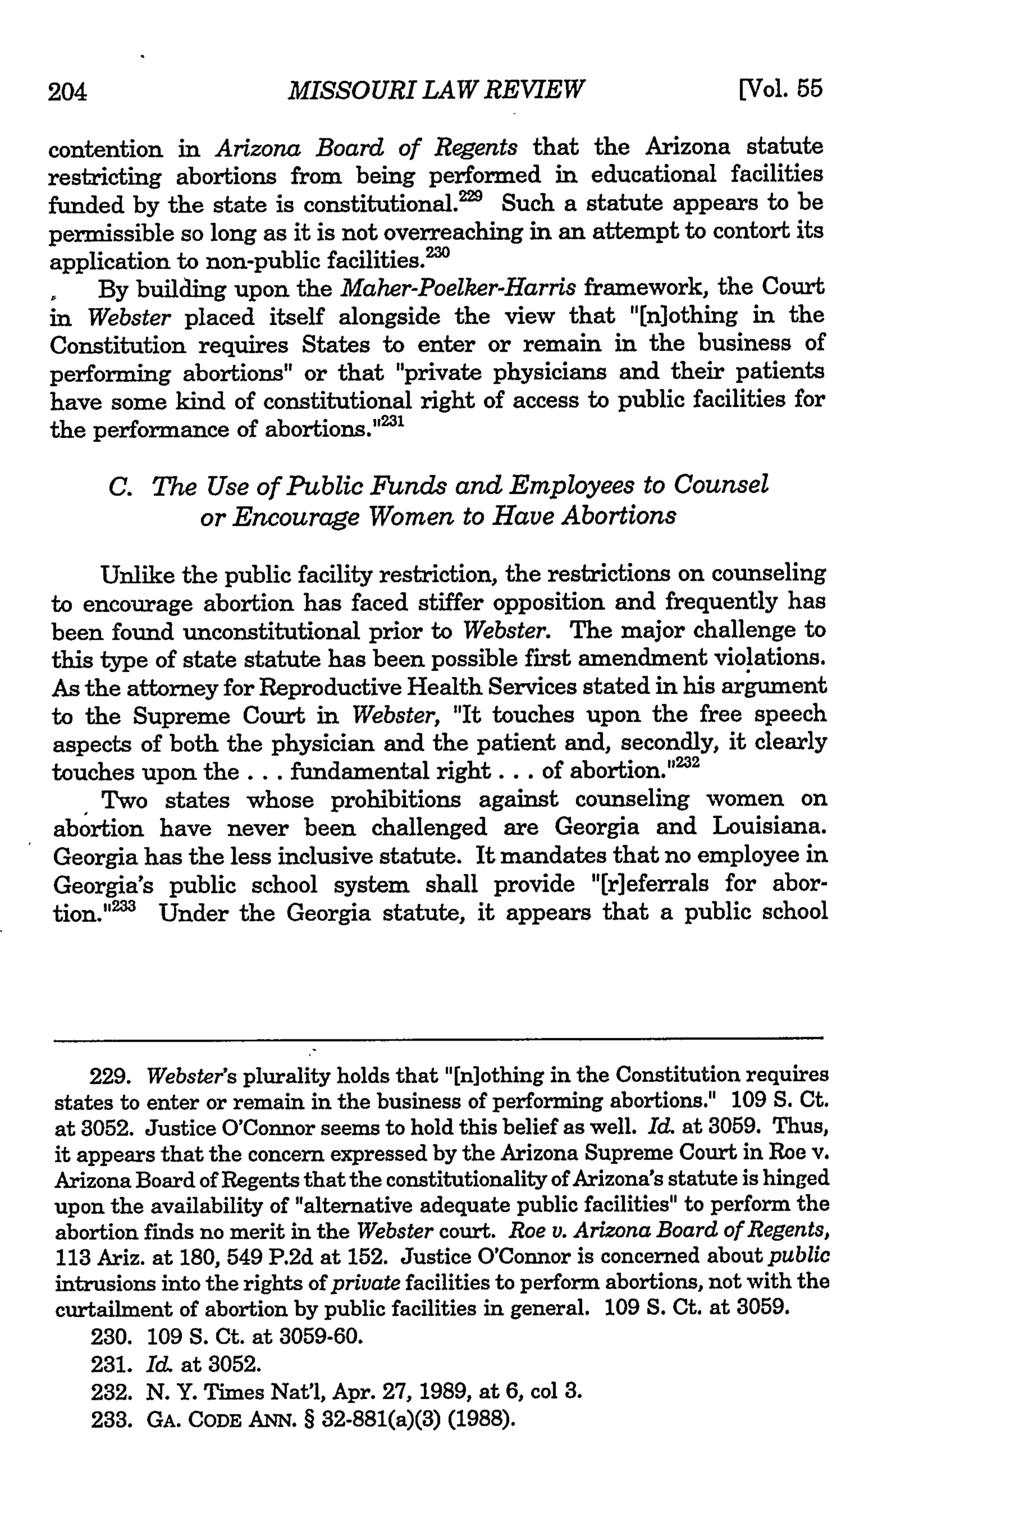 204 Missouri Law Review, Vol. 55, Iss. 1 [1990], Art. 5 MISSOURI LAW REVIEW [Vol.